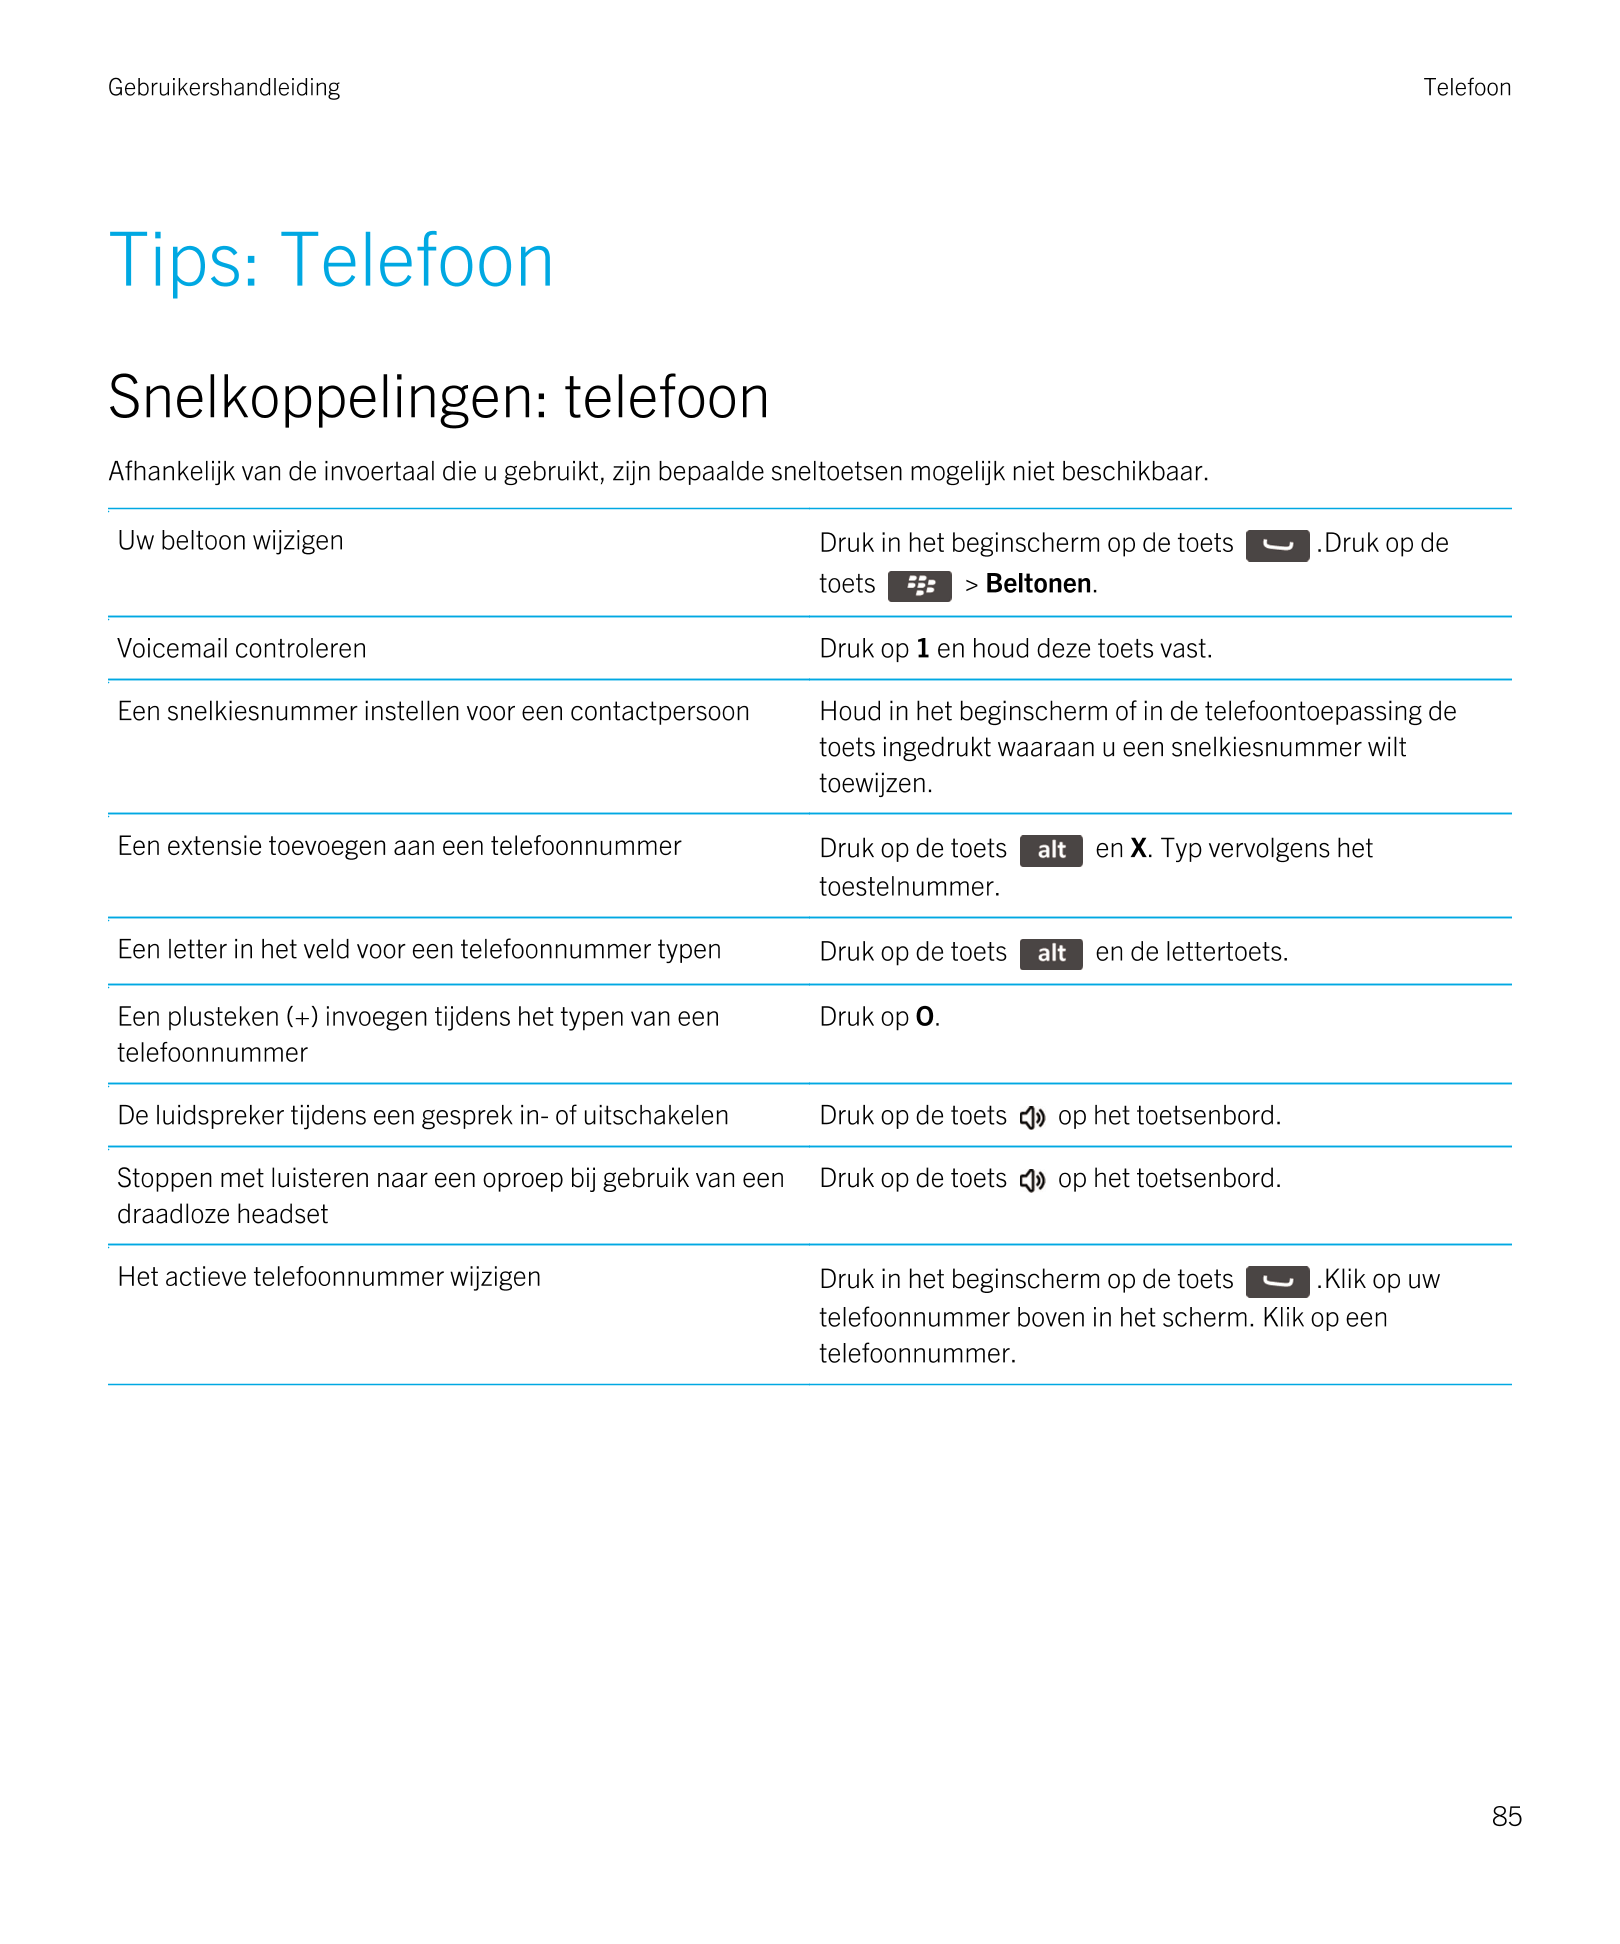 Gebruikershandleiding Telefoon
Tips: Telefoon
Snelkoppelingen: telefoon
Afhankelijk van de invoertaal die u gebruikt, zijn bepaa